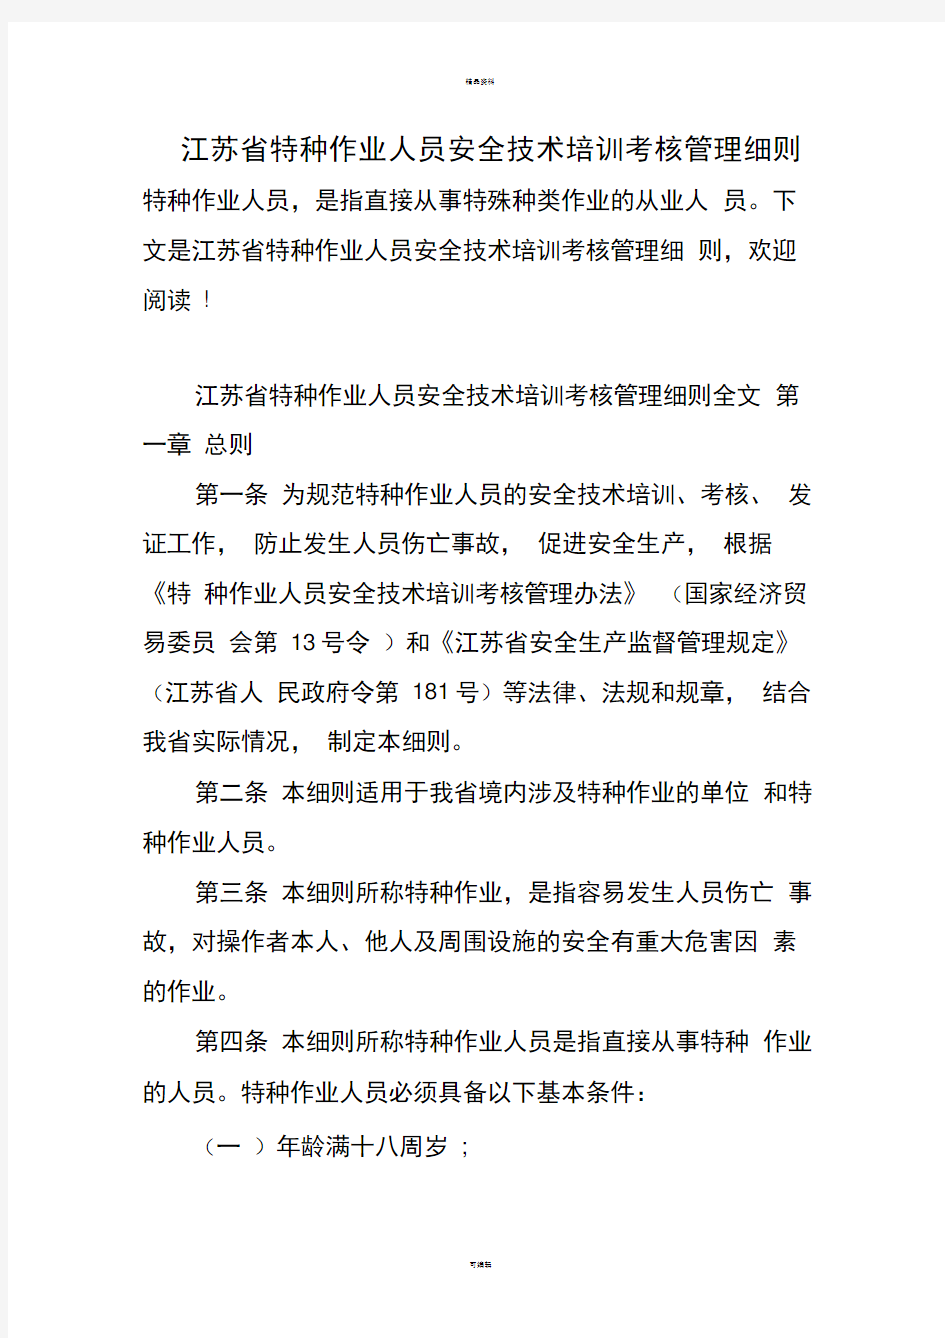 江苏省特种作业人员安全技术培训考核管理细则